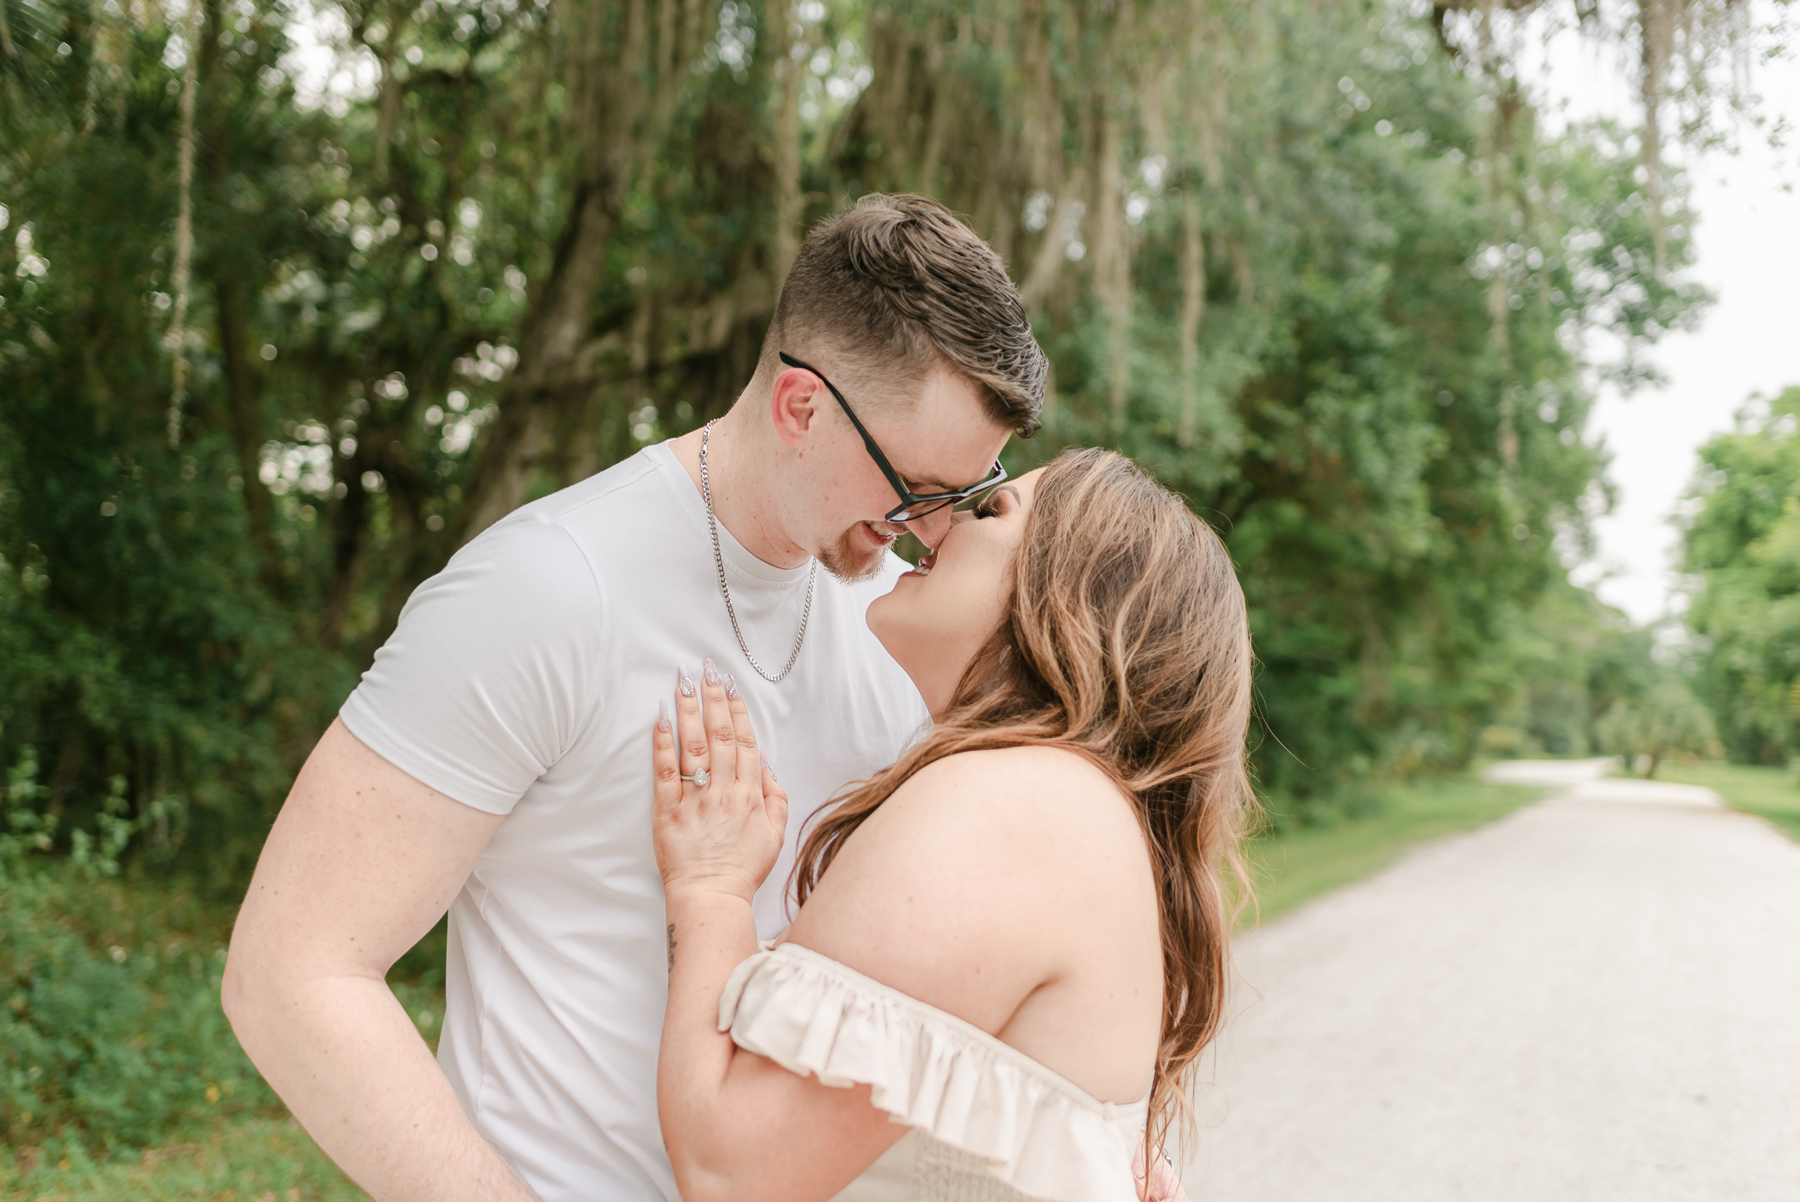 Engagement session at Riverbend park in Jupiter, Florida